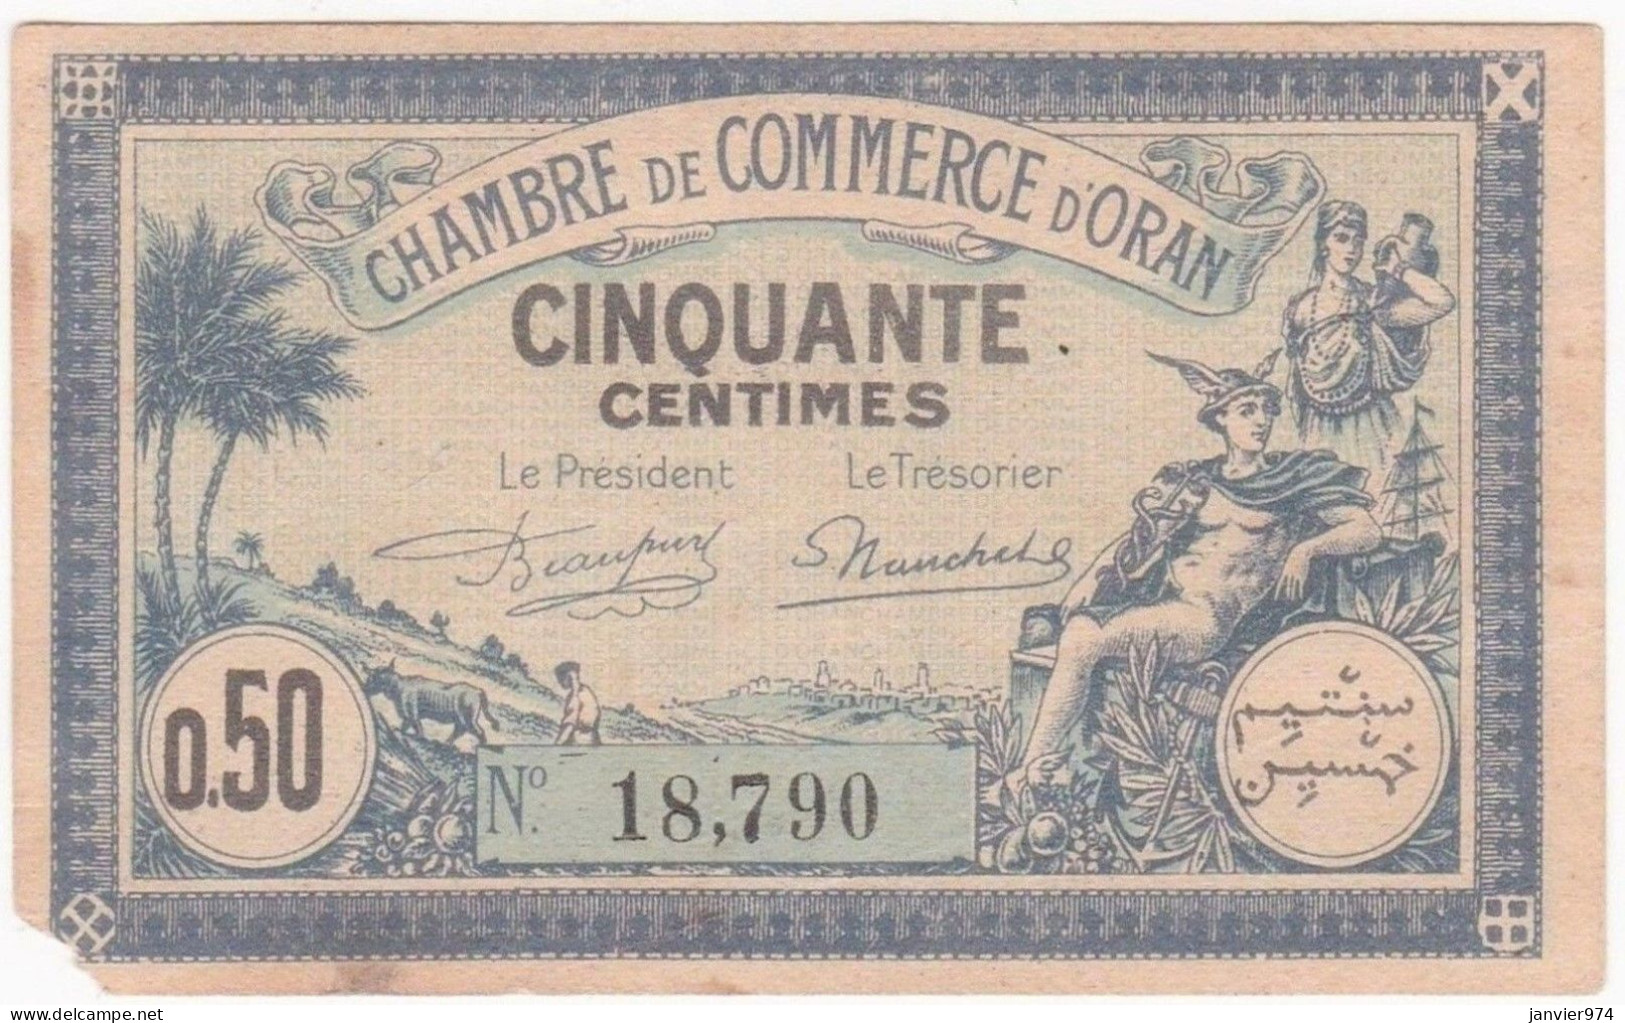 Algerie Oran. Chambre De Commerce.  50 Centimes 11 Avril 1923 N° 18,790. Billet Colonial Circulé - Camera Di Commercio